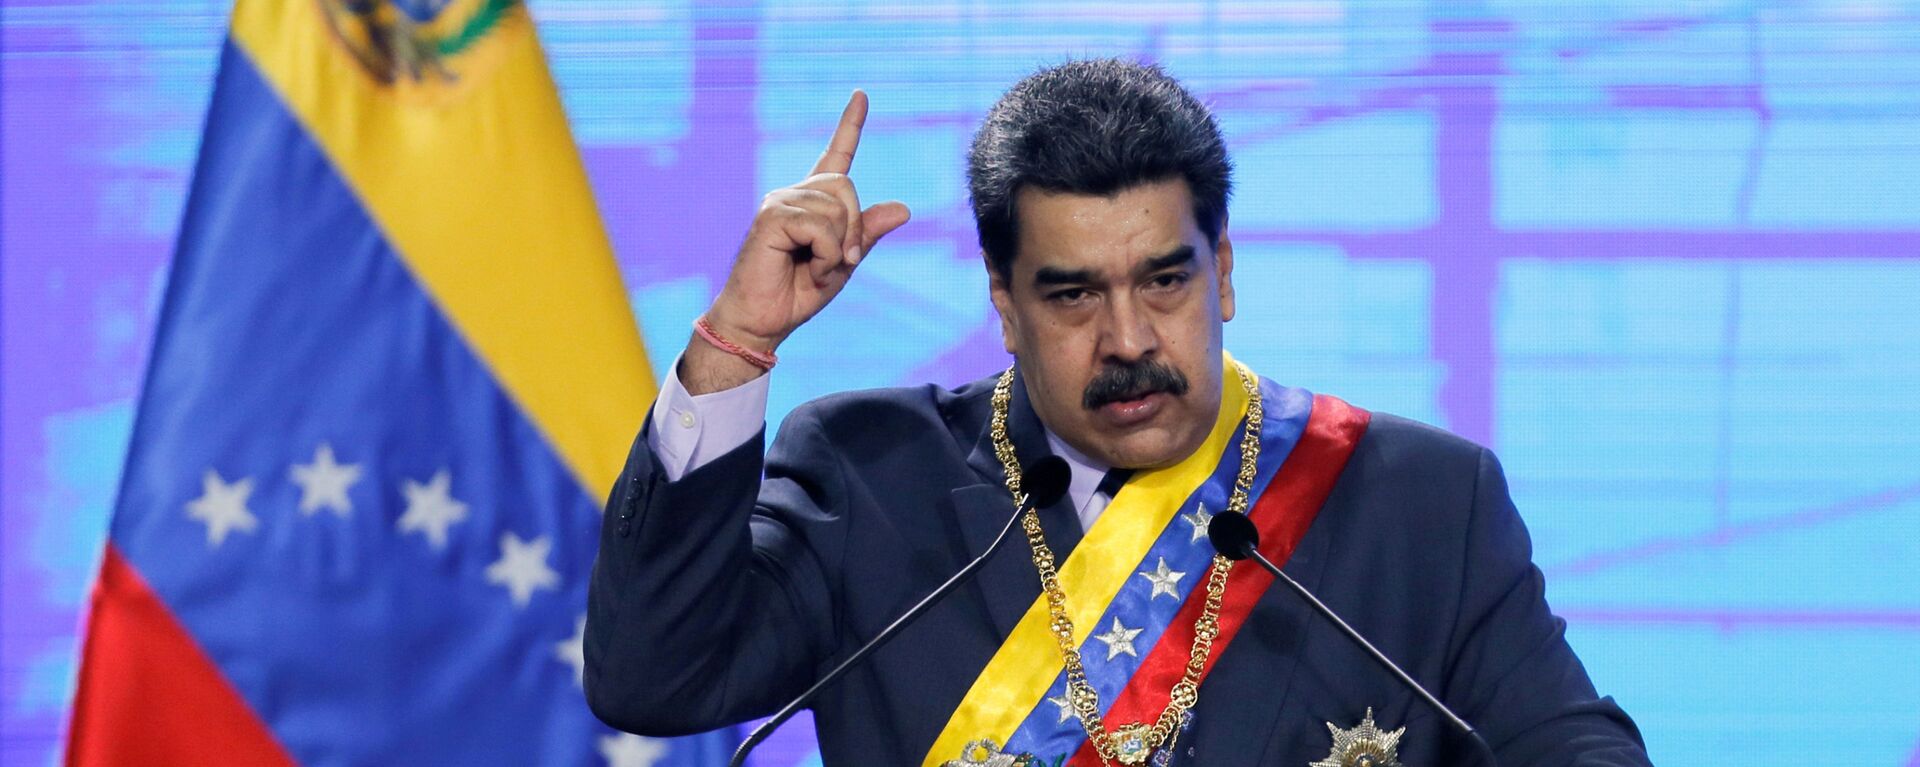 Nicolás Maduro, presidente de Venezuela - Sputnik Mundo, 1920, 05.05.2021